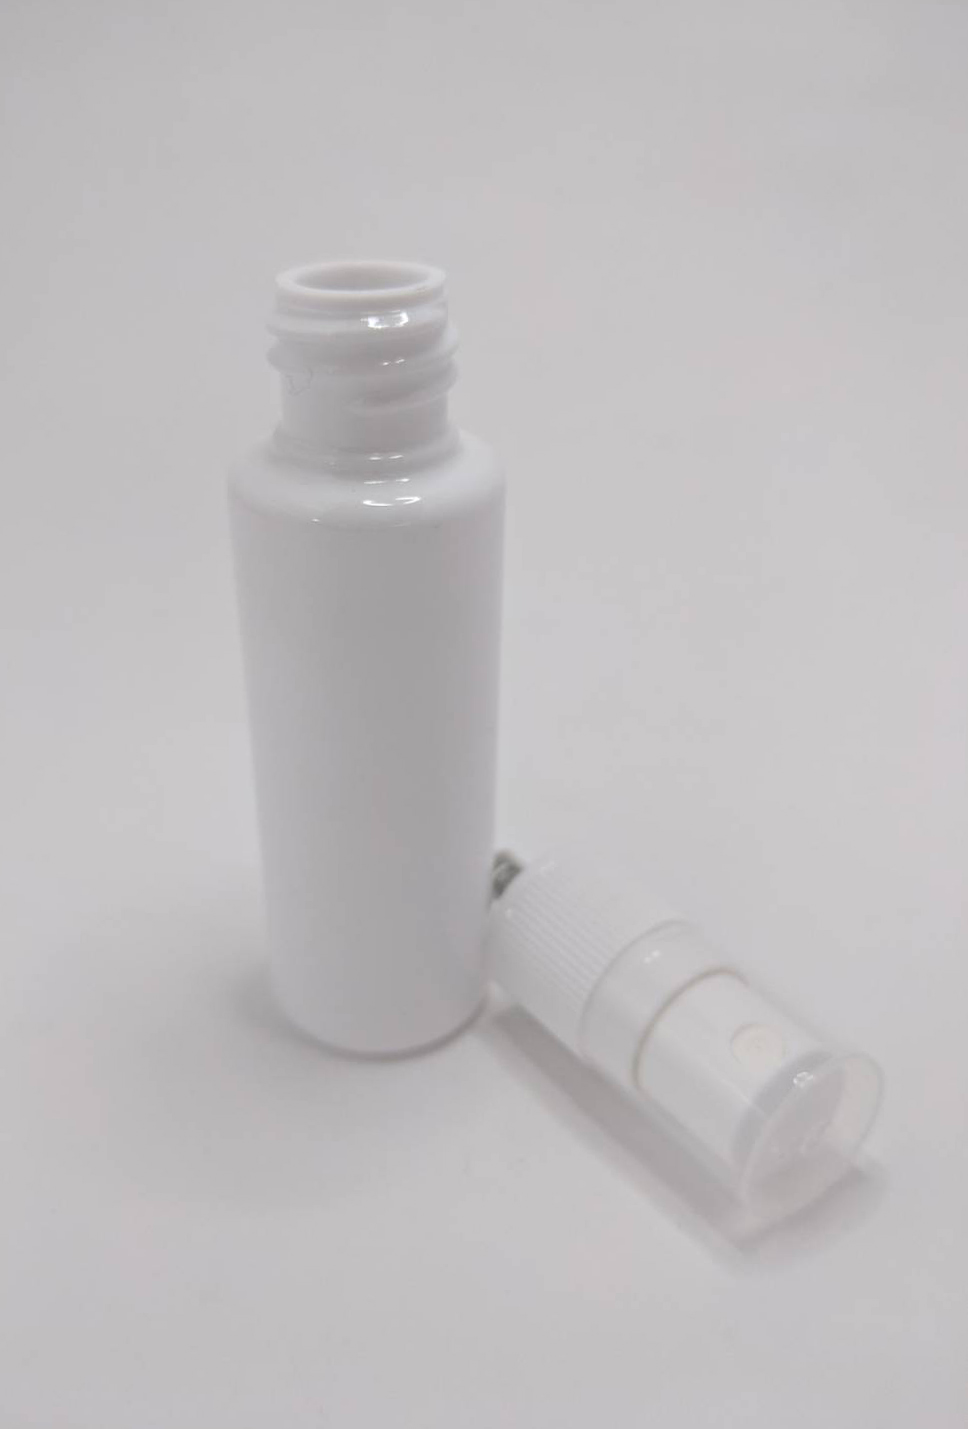 美妝塑膠分裝噴霧瓶30ML台灣製白色平肩圓形分裝噴霧空瓶